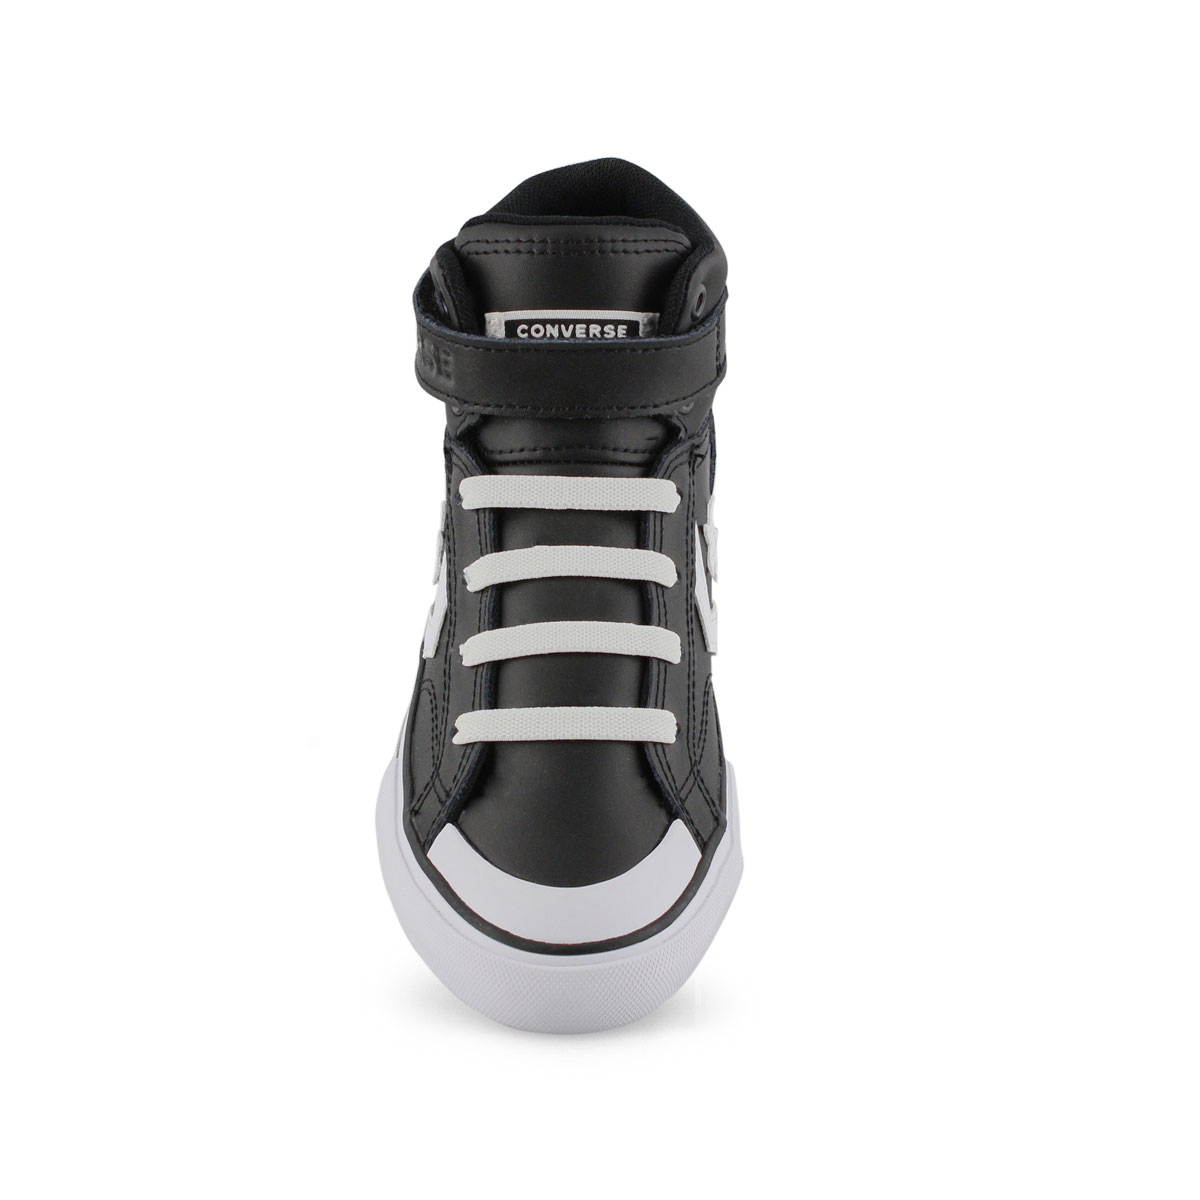 Boys Pro Blaze Strap Hi Top Sneaker - Black/White